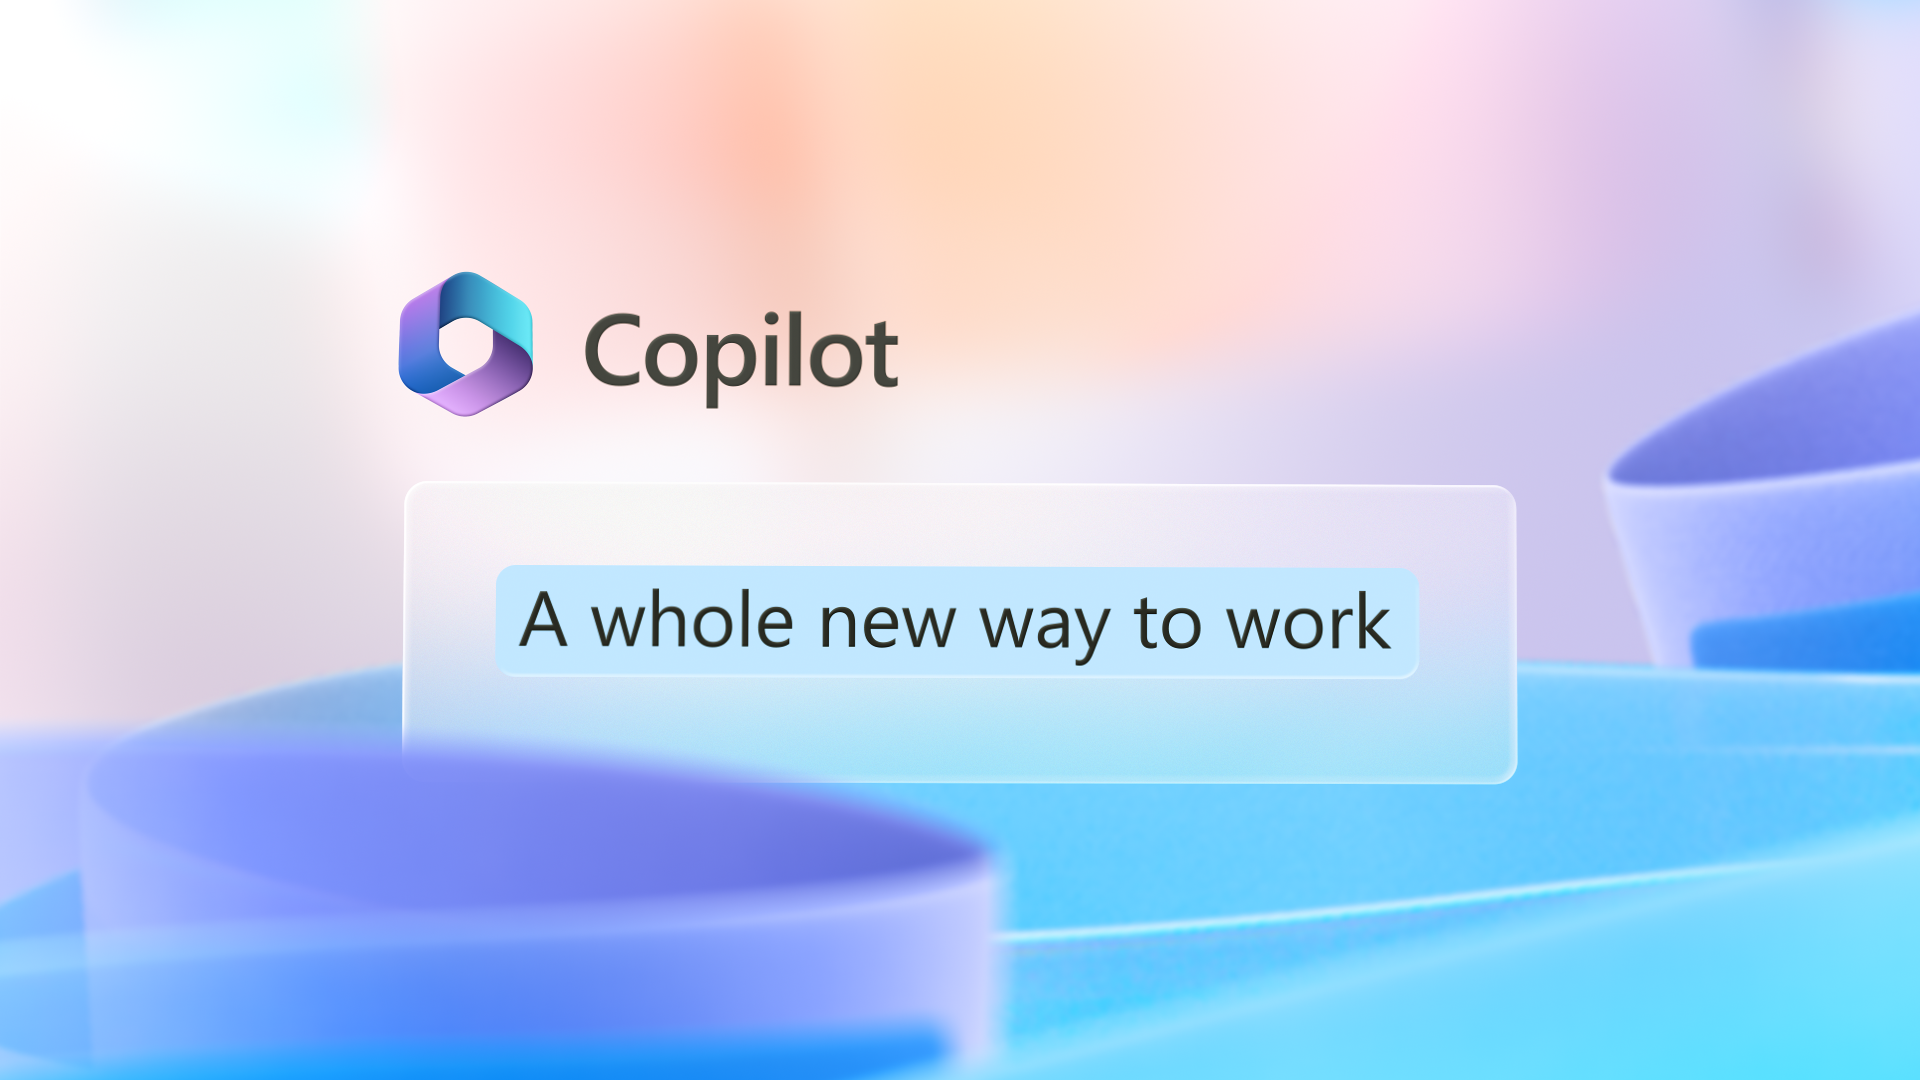 Grafisk bild har Copilot-logotypen med orden Ett helt nytt sätt att arbeta.